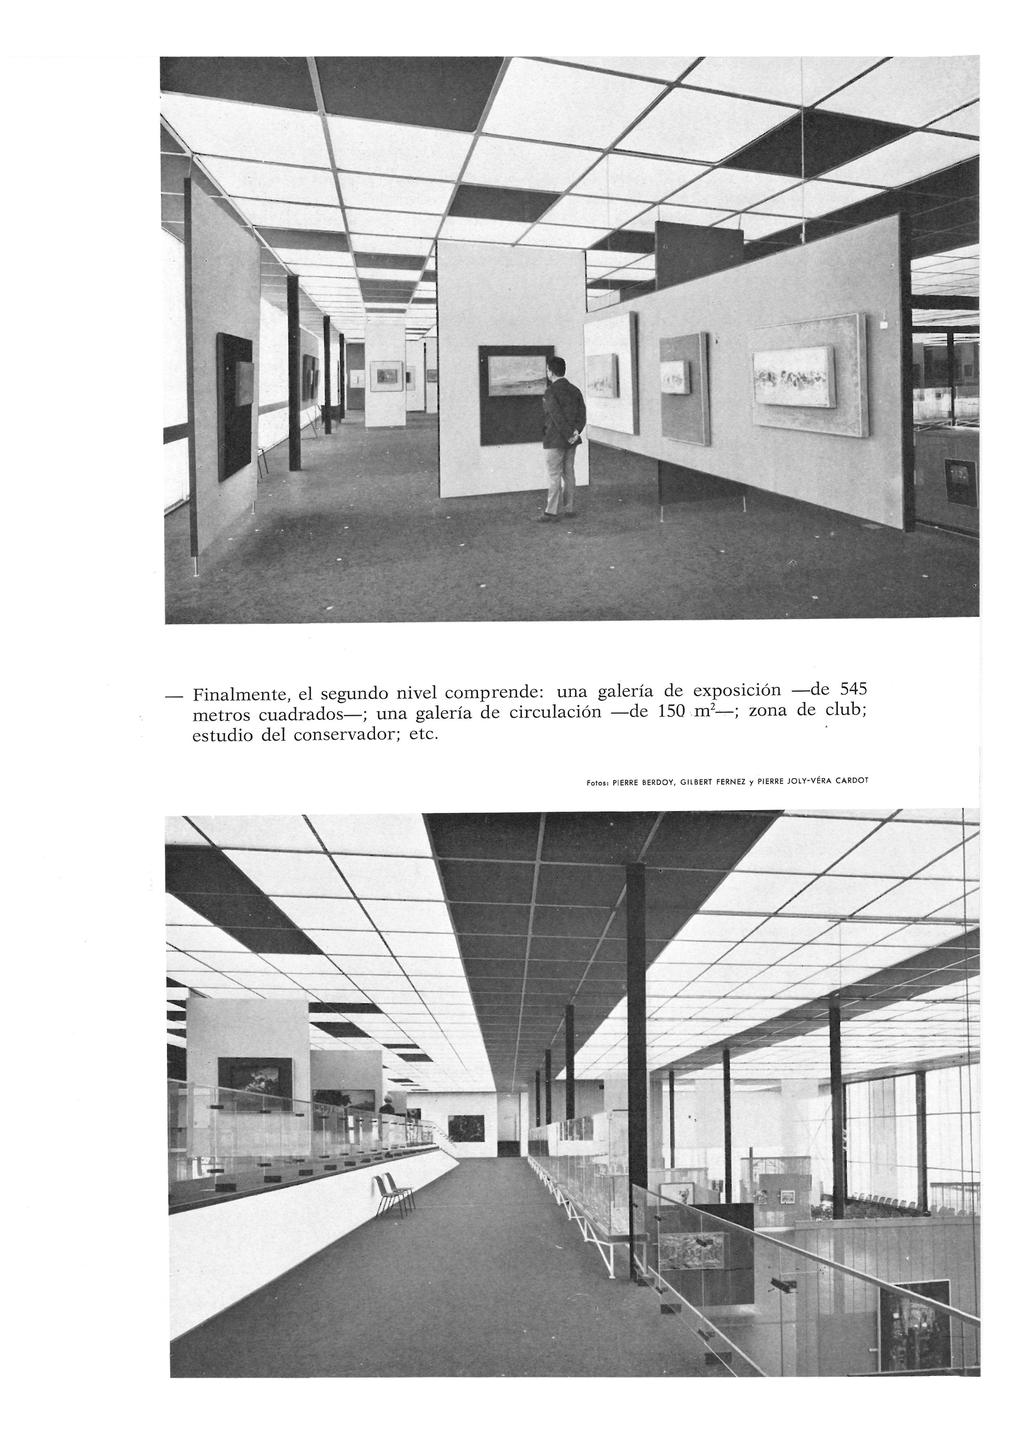 Finalmente, el segundo nivel comprende: una galería de exposición de 545 metros cuadrados ; una galería de circulación